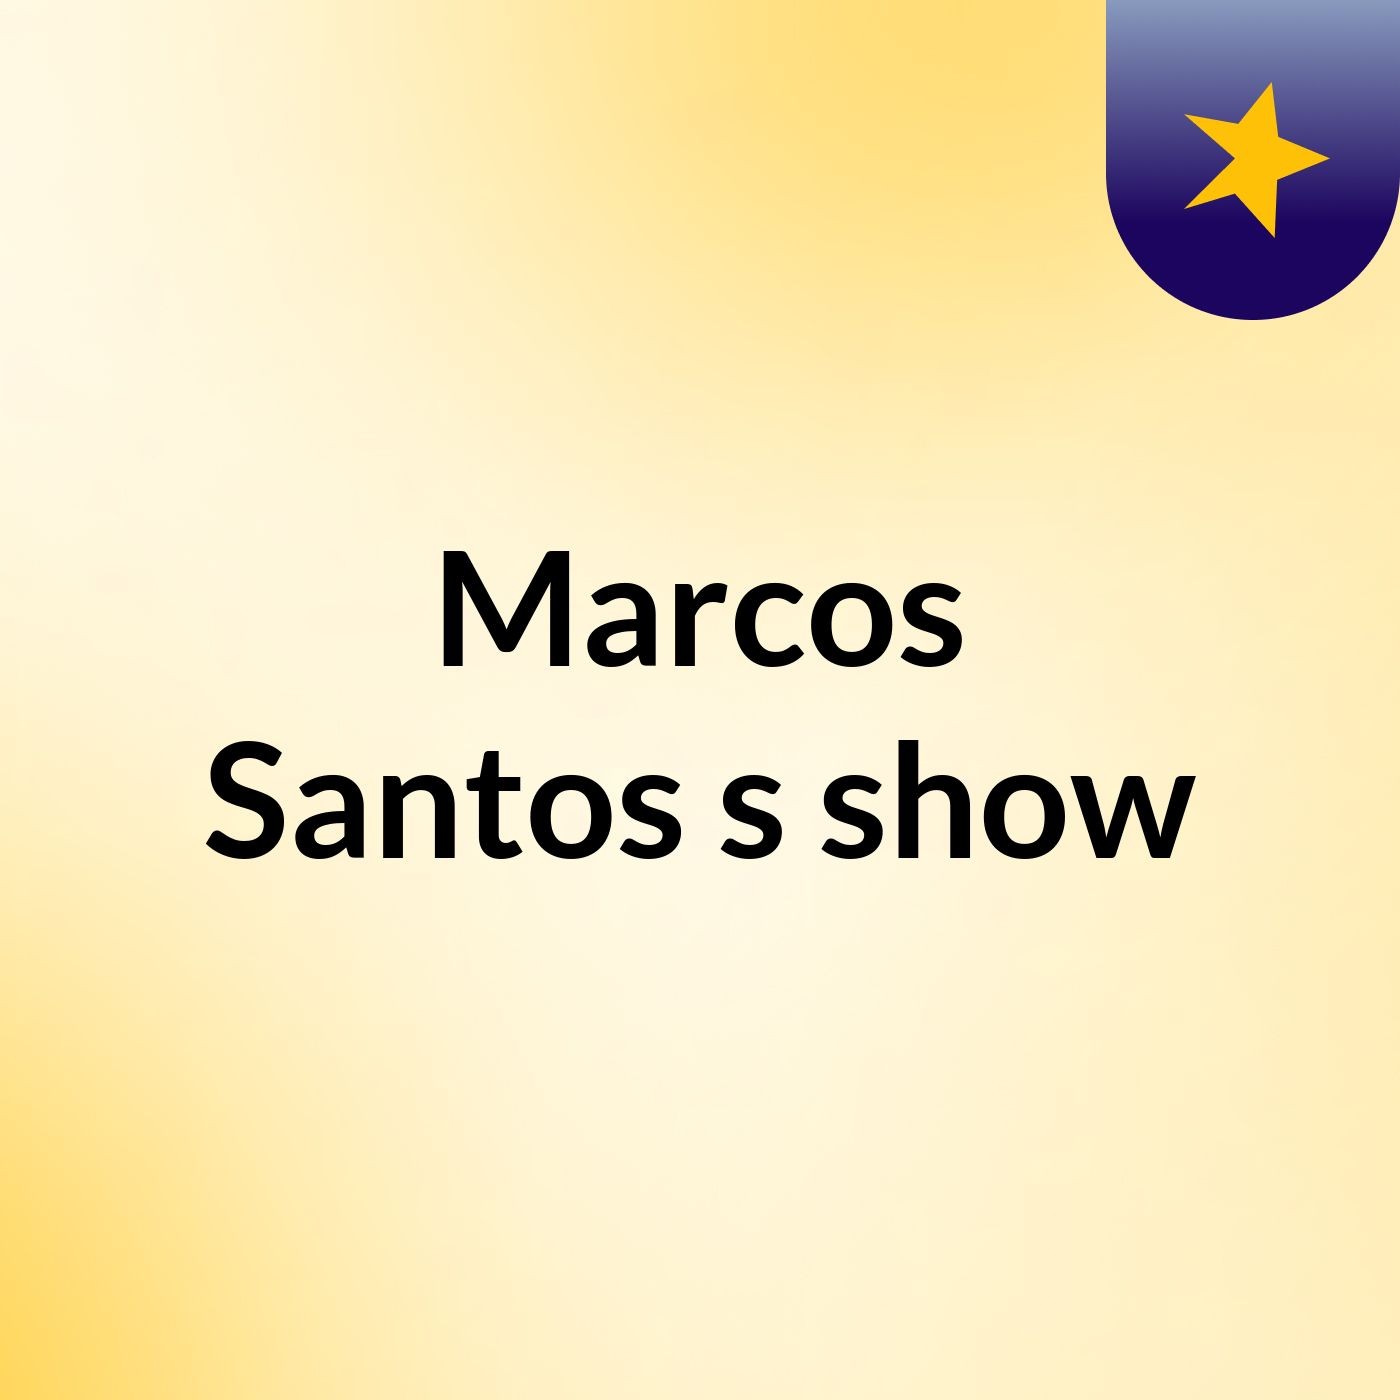 Marcos Santos's show